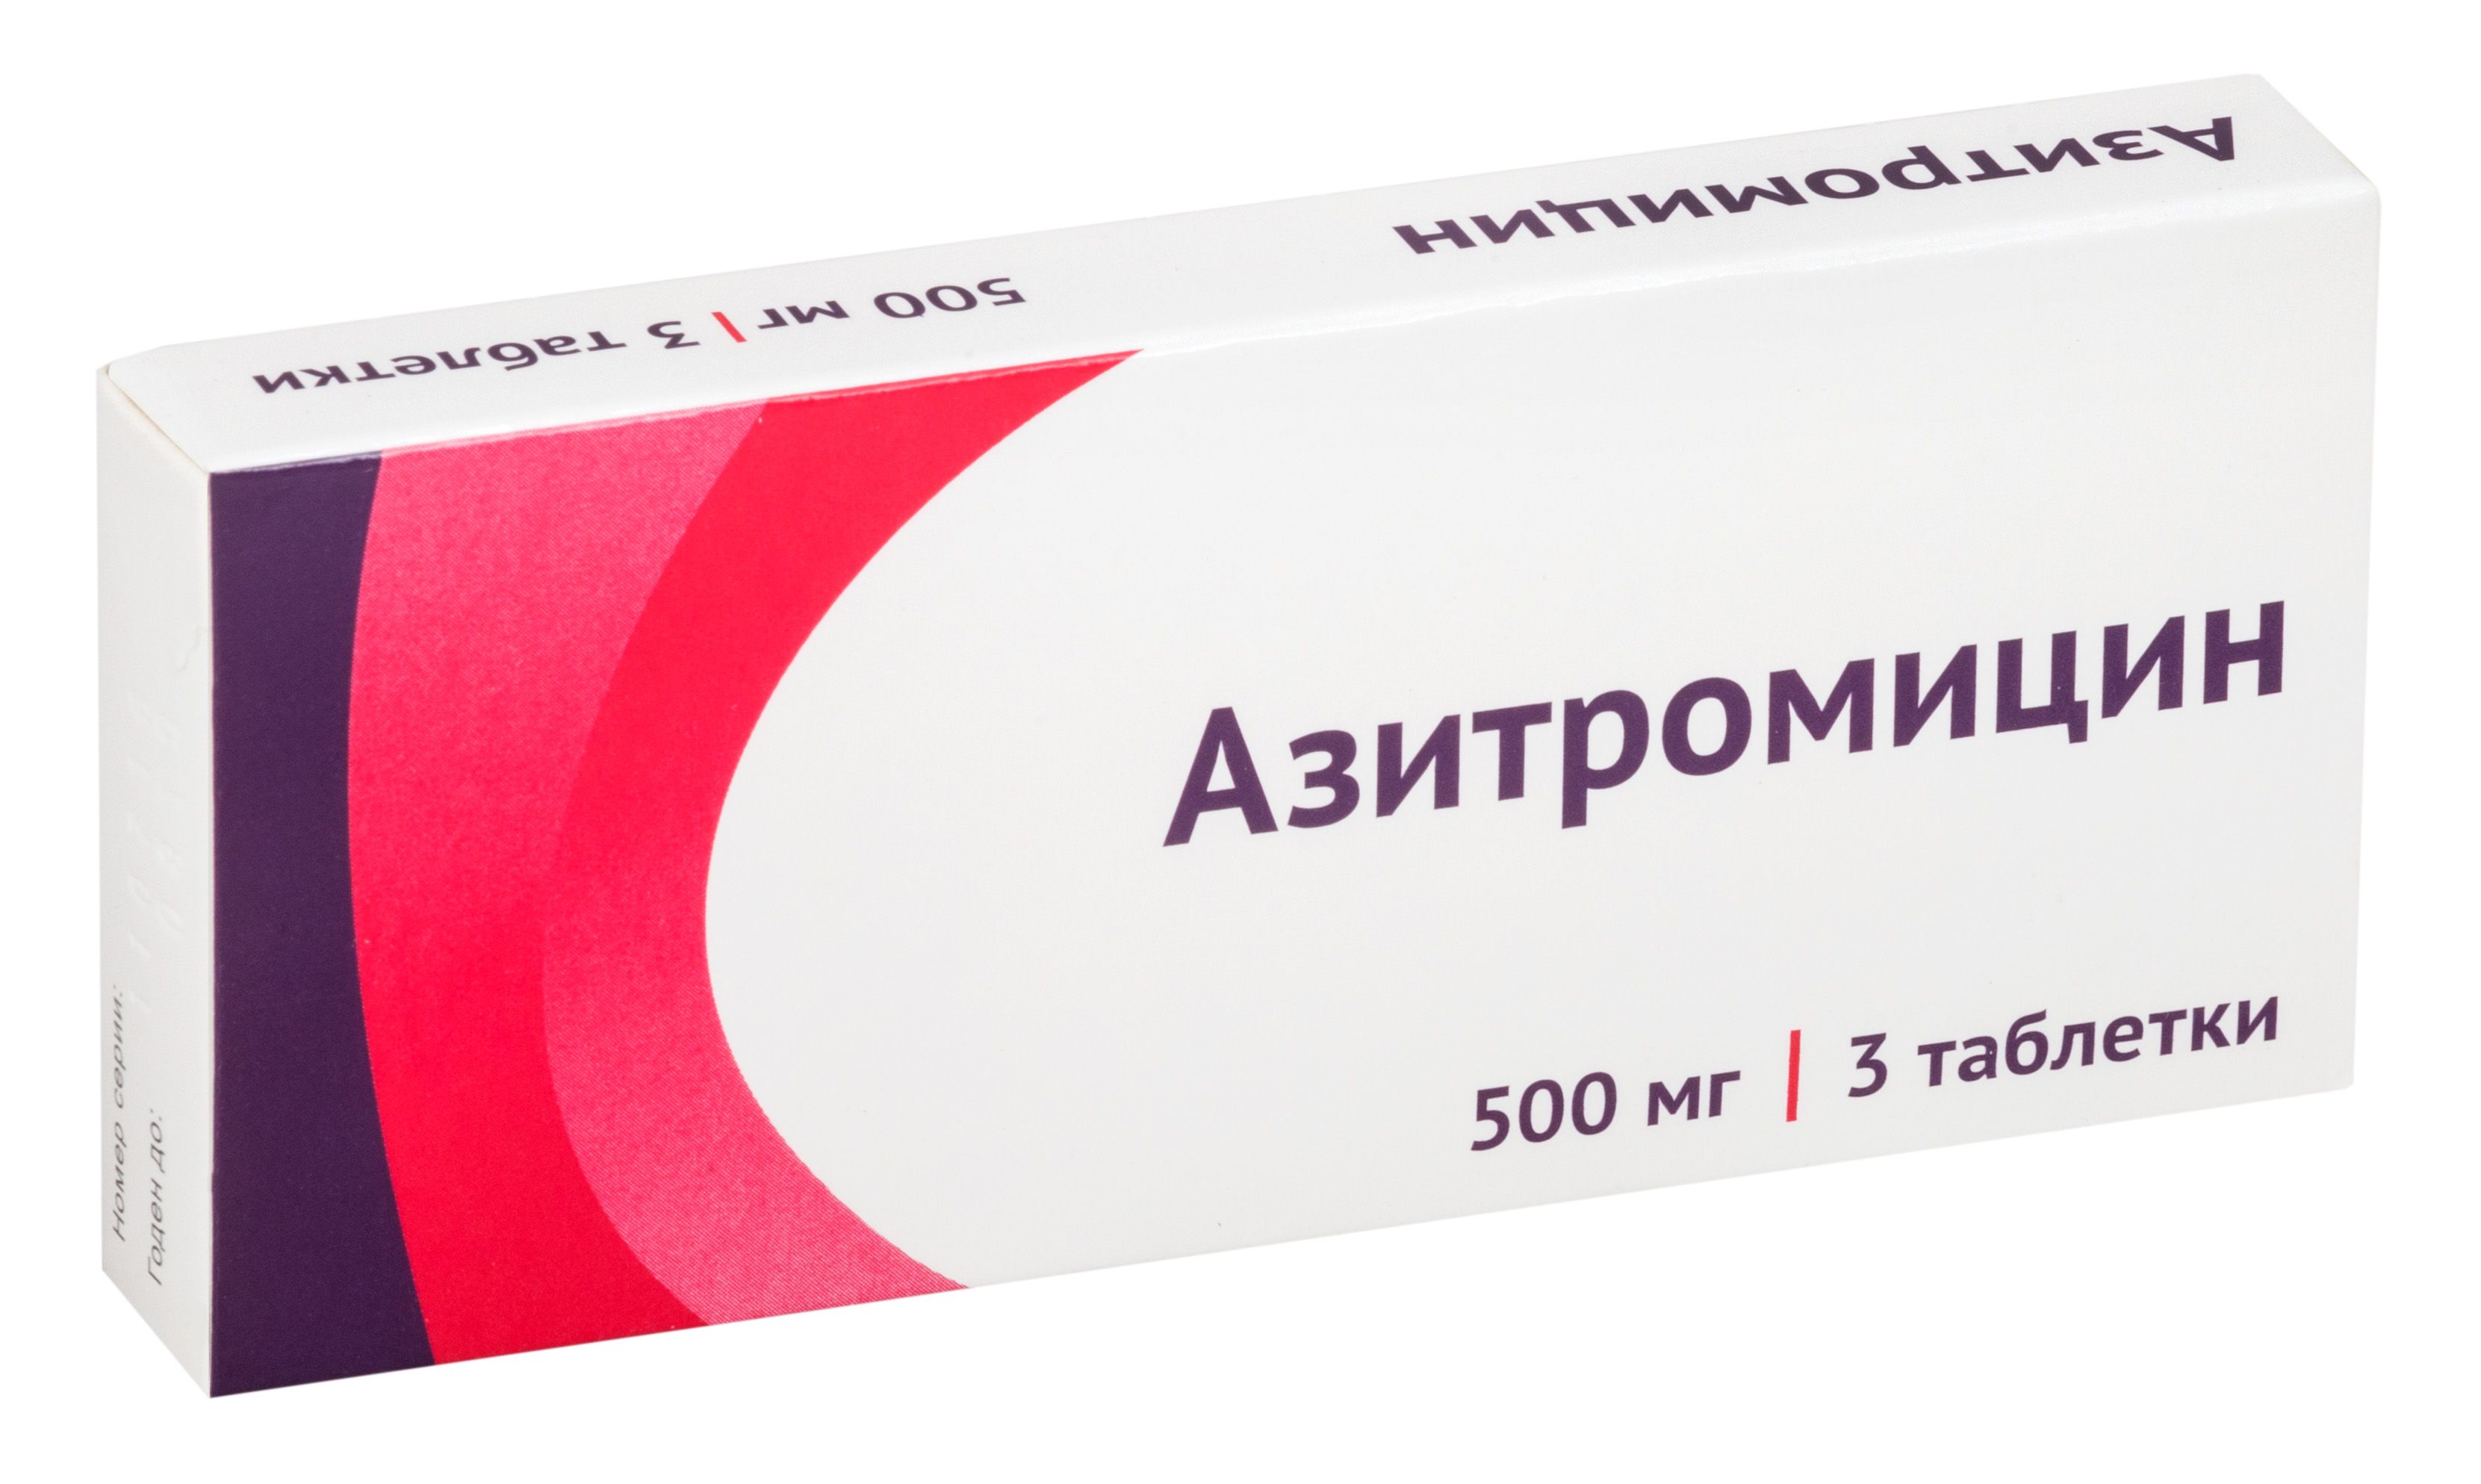 Азитромицин 500 мг: инструкция по применению, формы выпуска, аналоги .